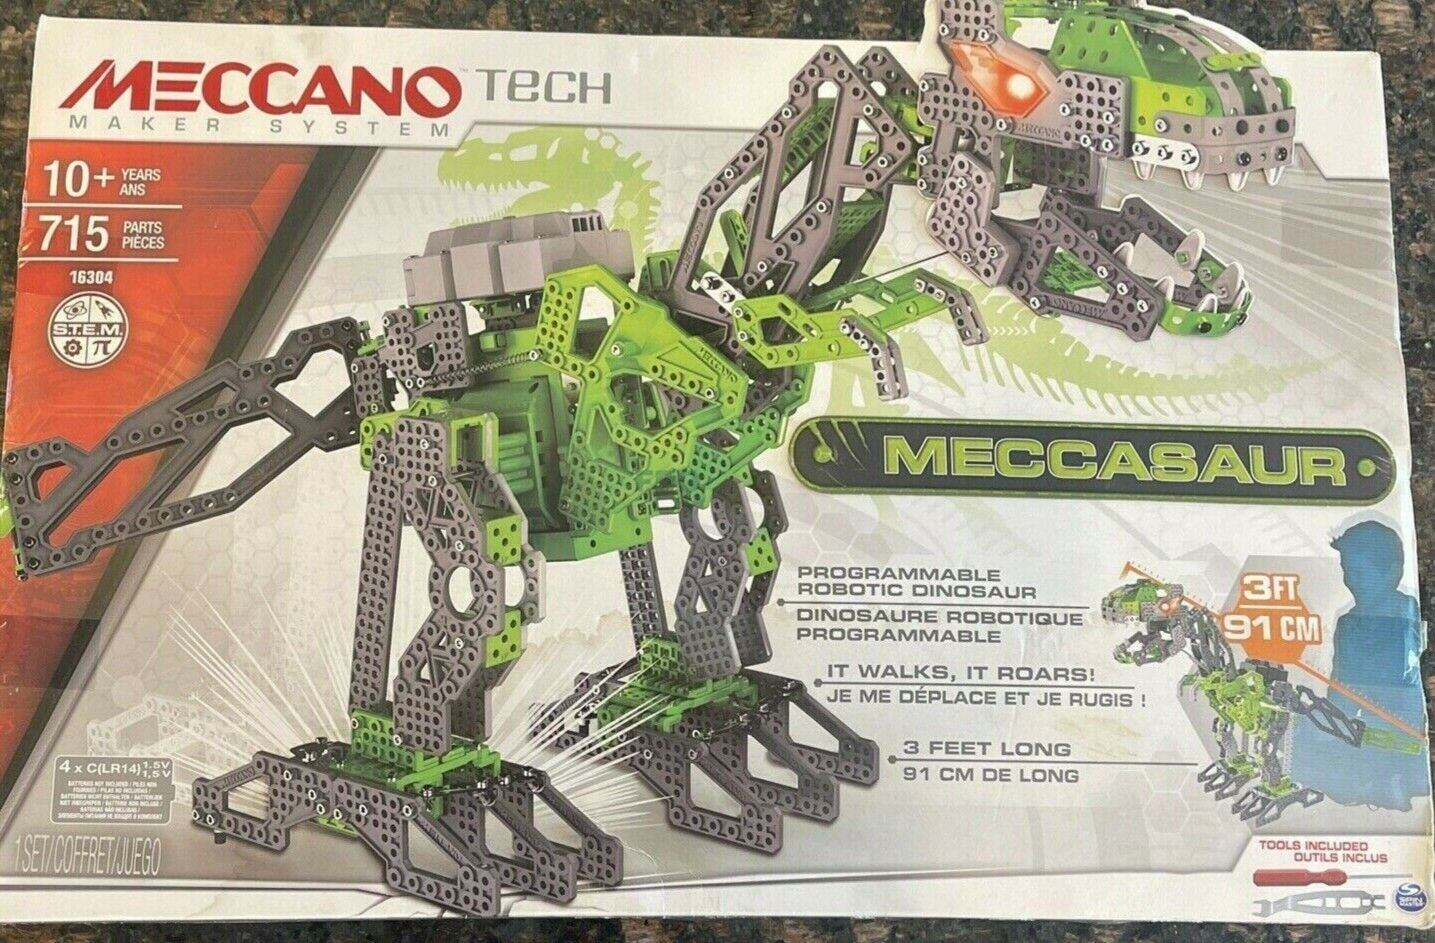 Meccano Tech Max price 73% OFF 3' MECCASAUR Programmable 16304 Dinosaur Se Robotic